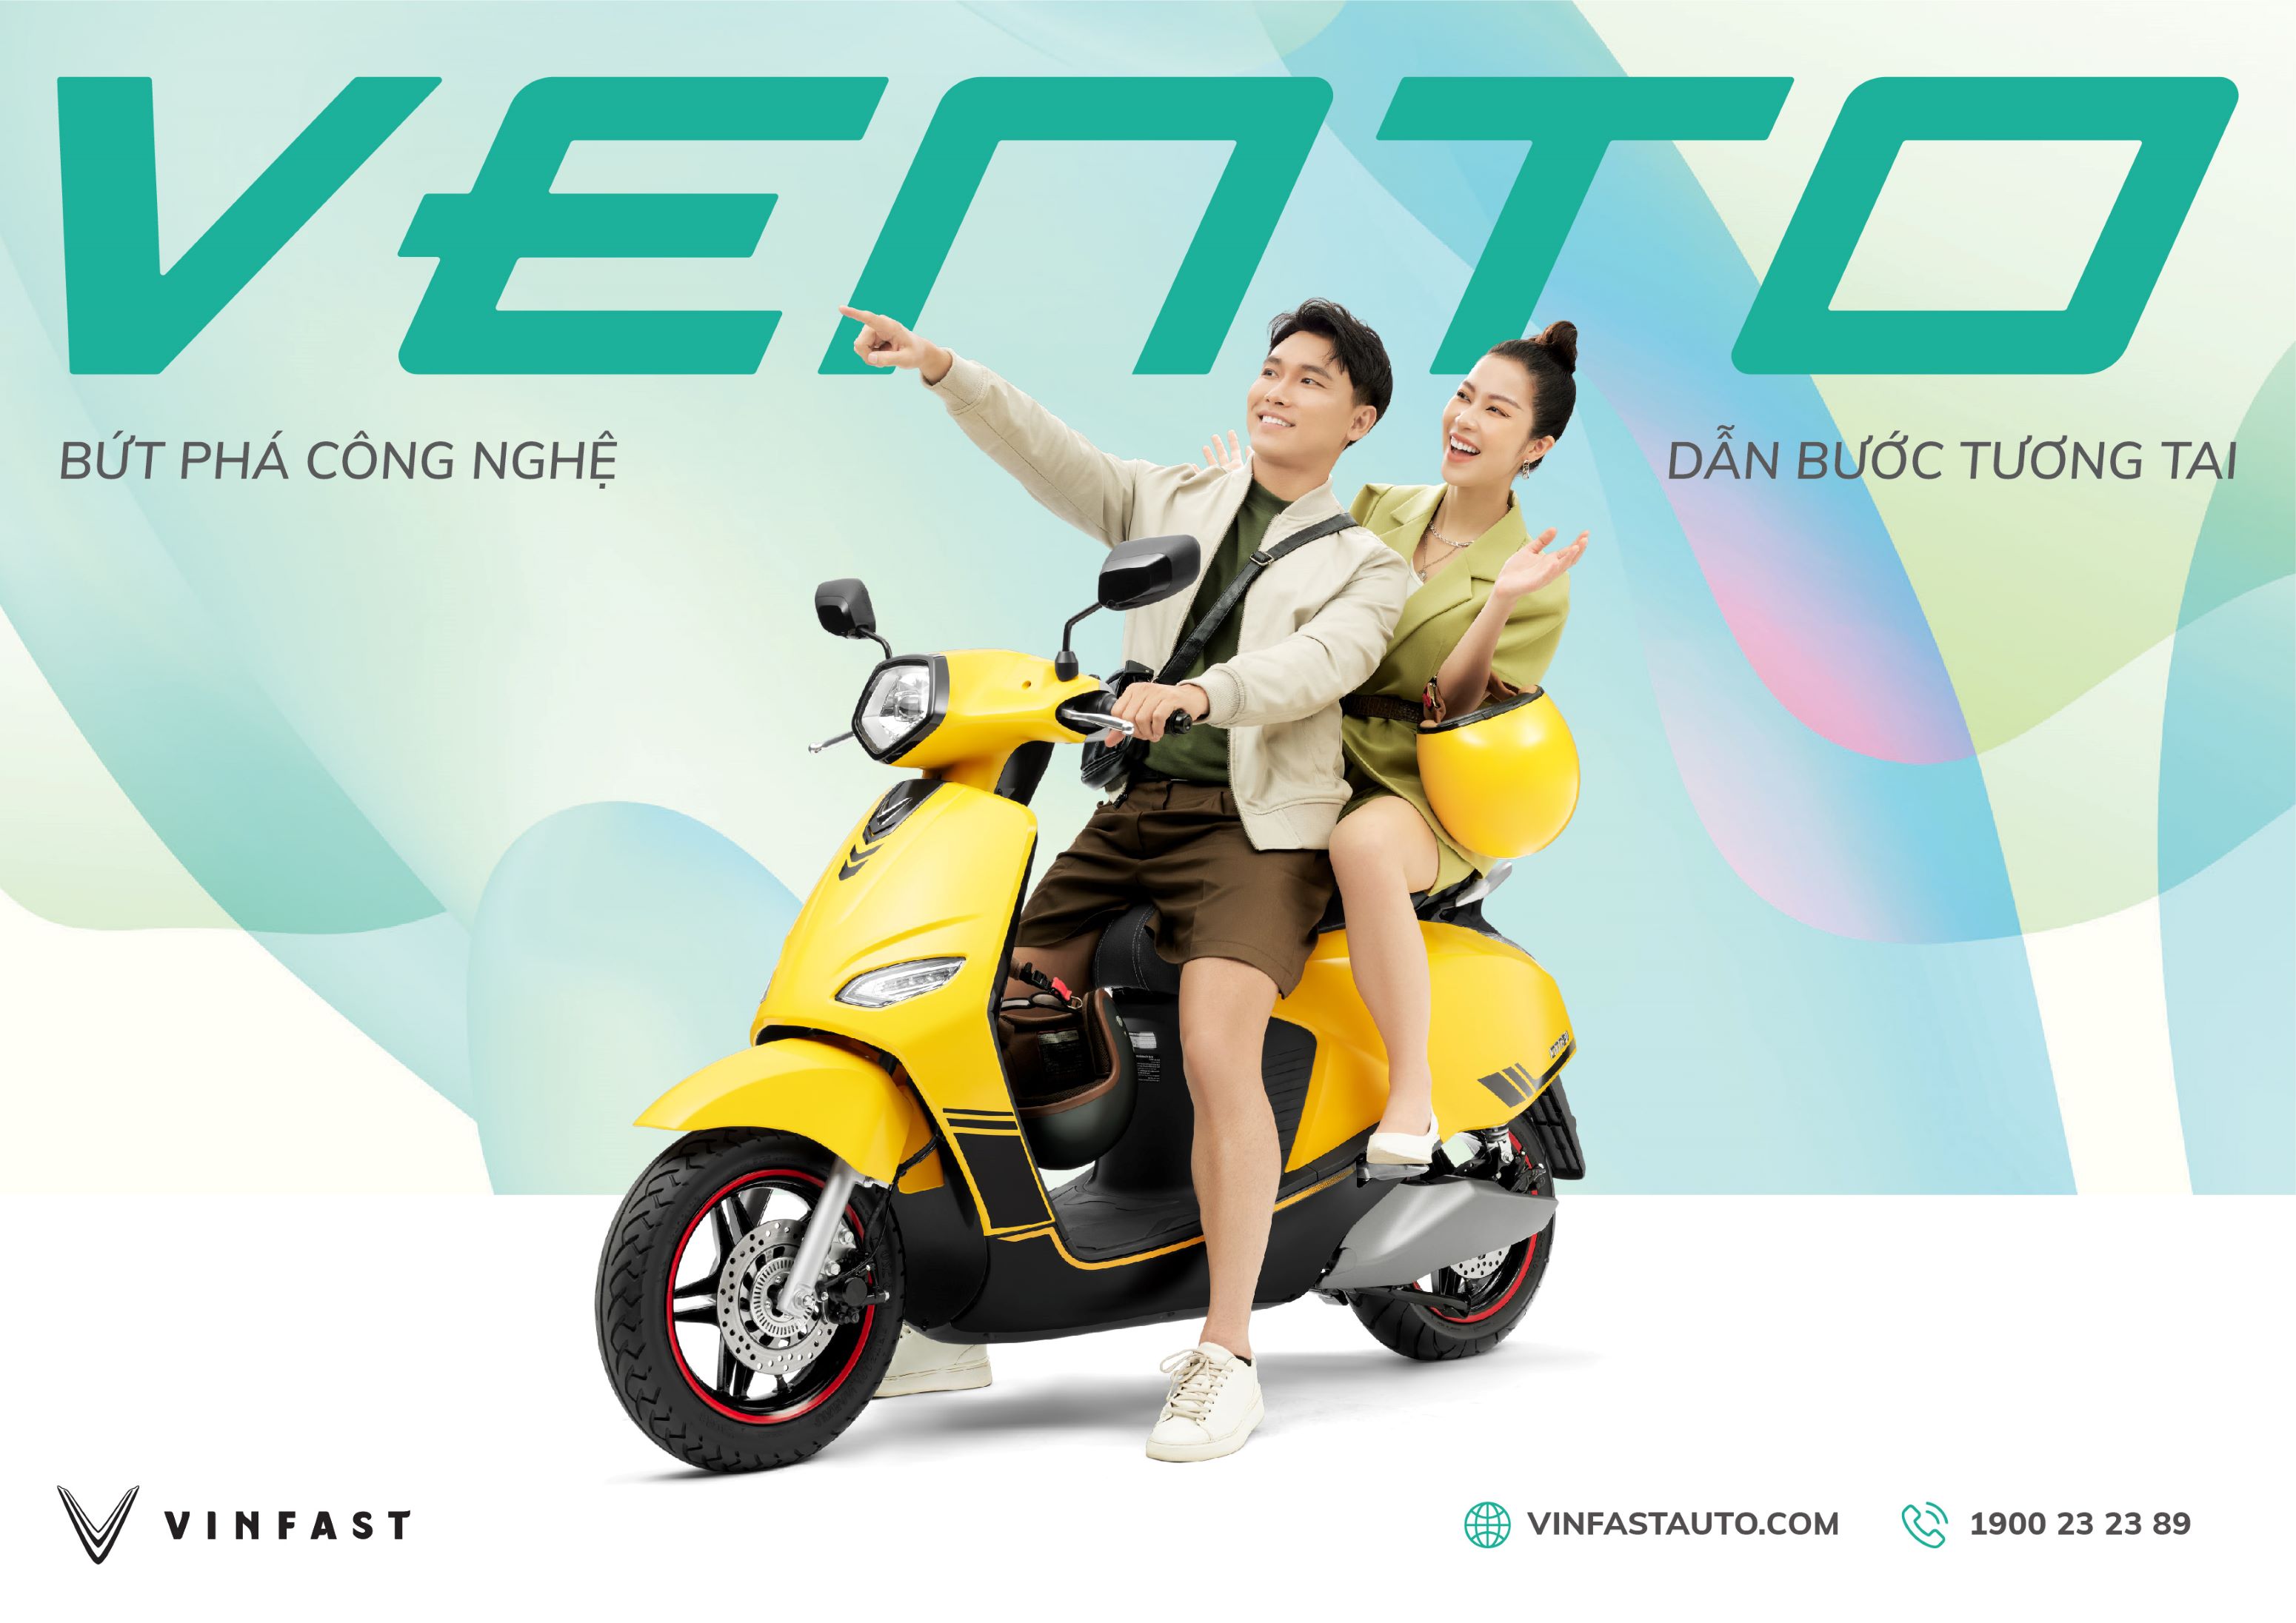 Kinh tế - VinFast ra mắt xe máy điện Vento hoàn toàn mới, tốc độ tối đa 80km/h